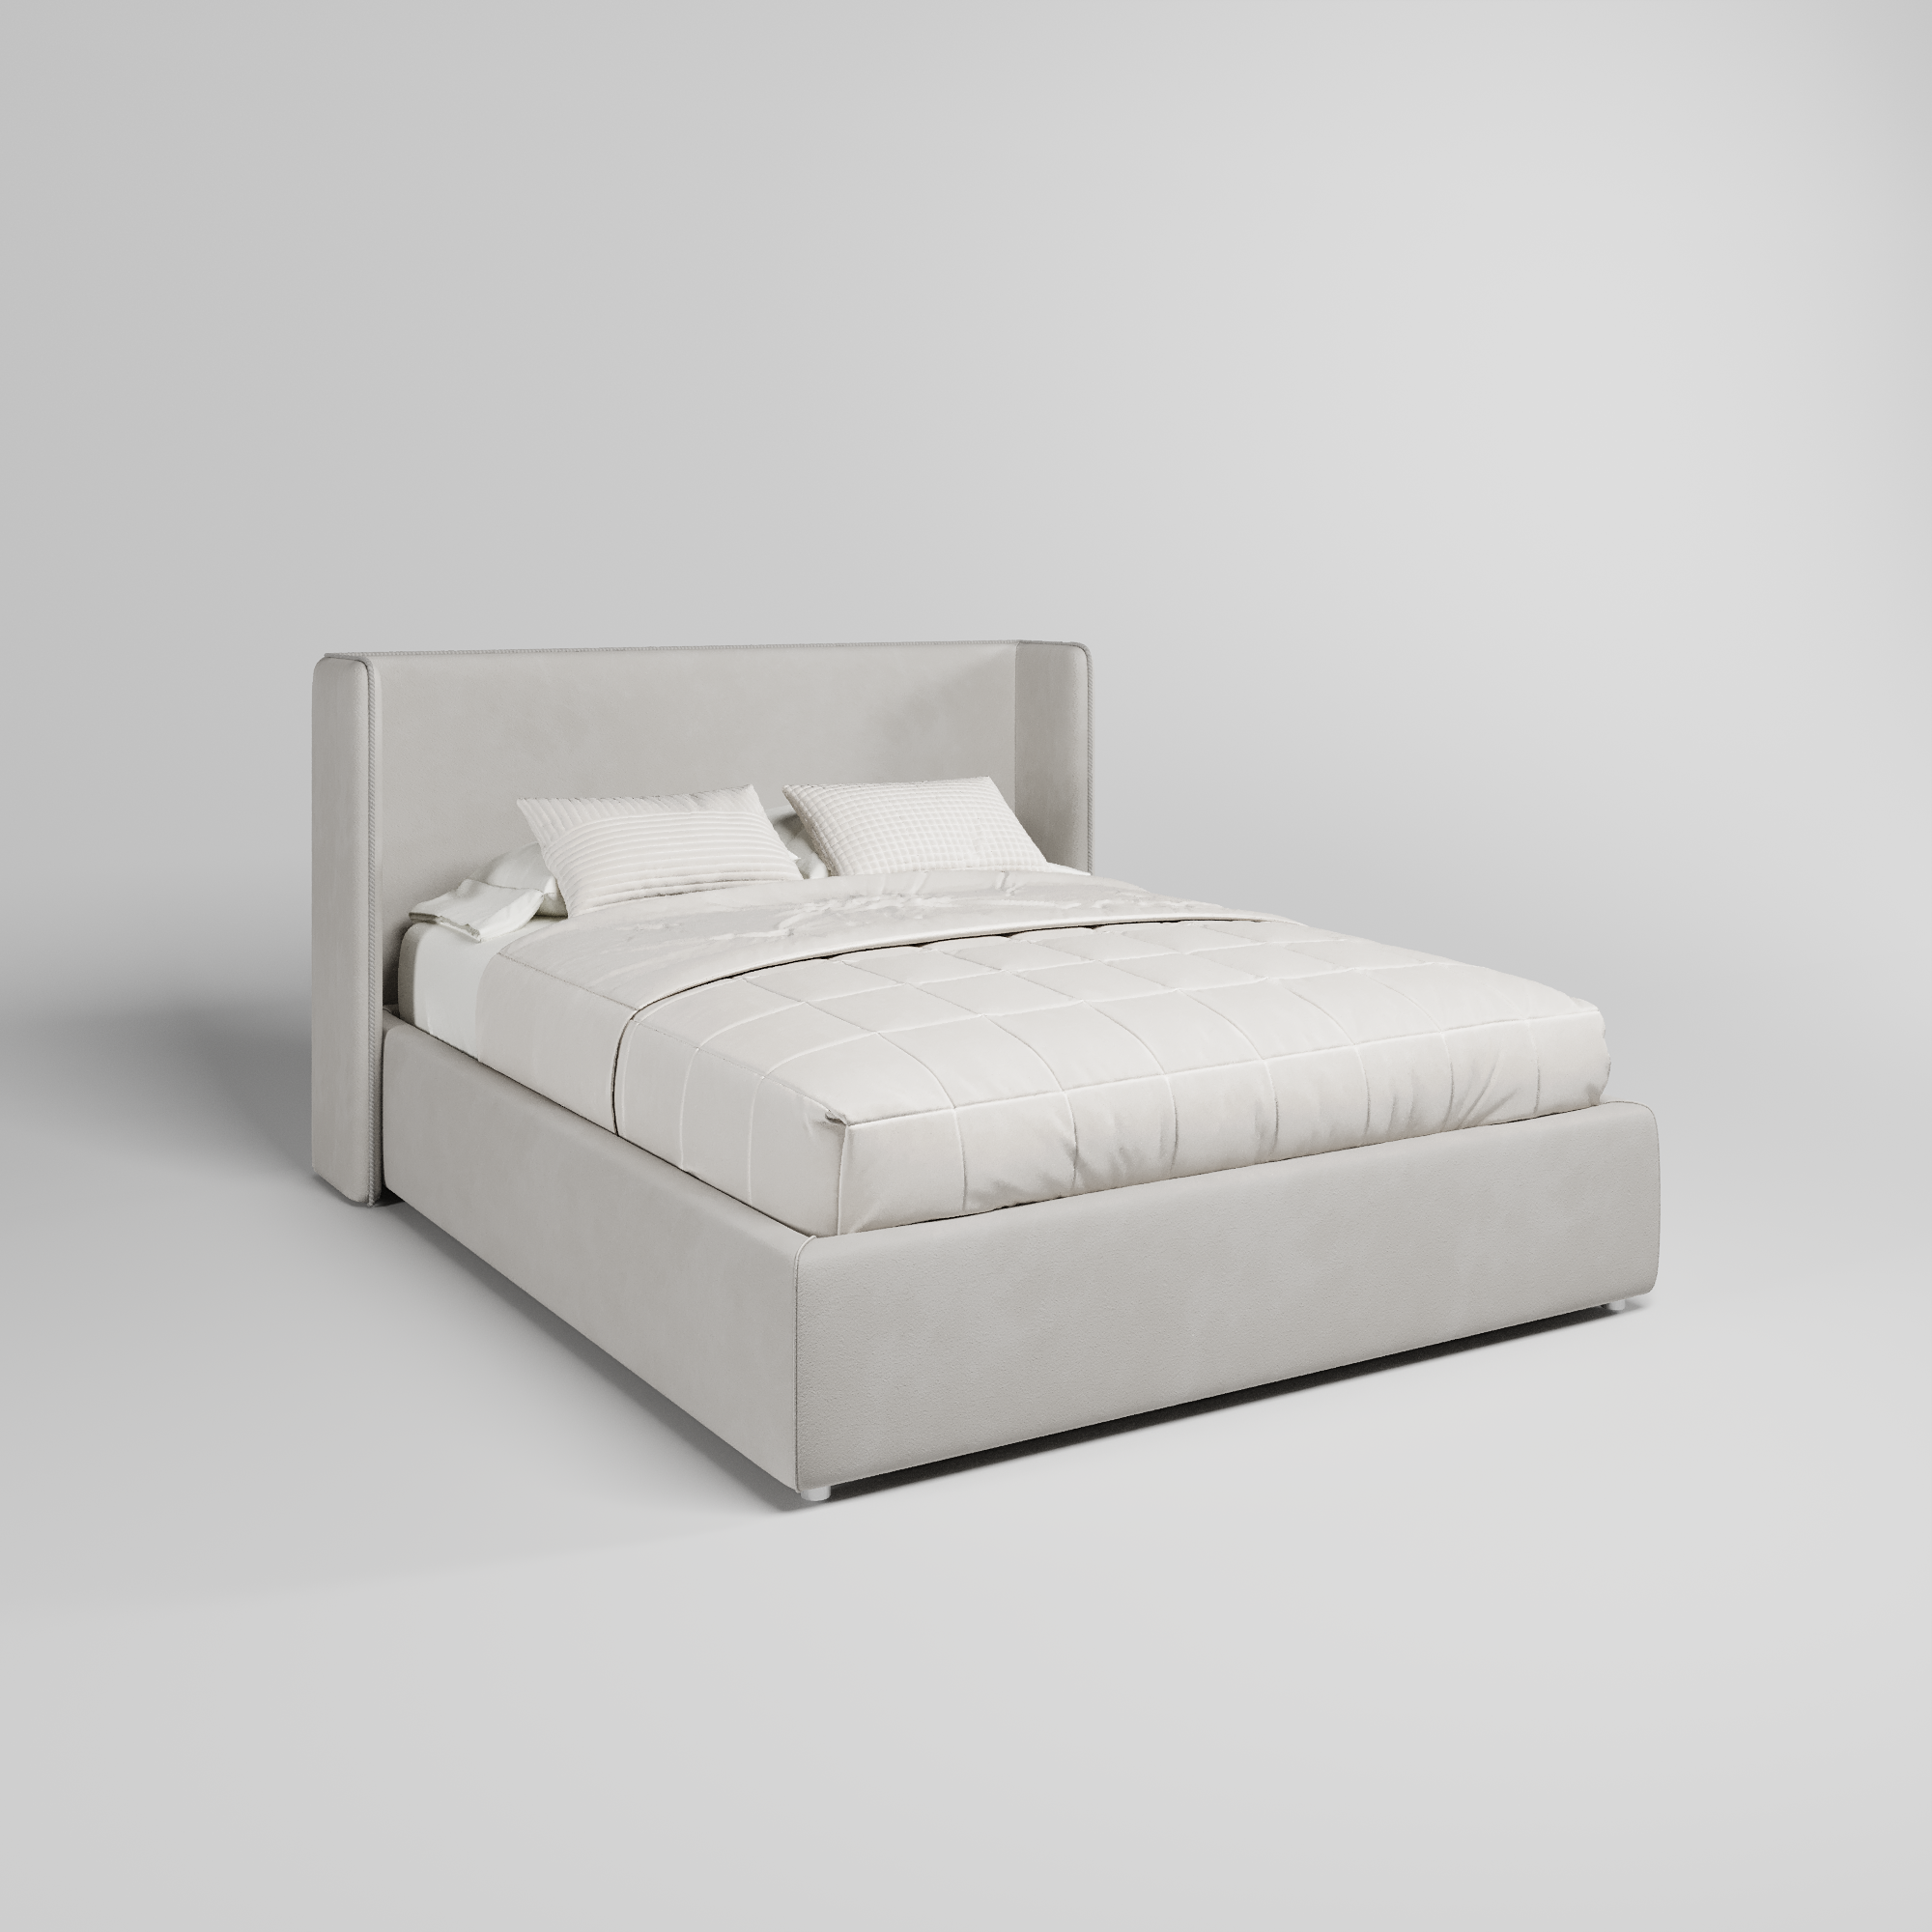 Кровать двуспальная мягкая Avrora с подъемным механизмом, 180x200